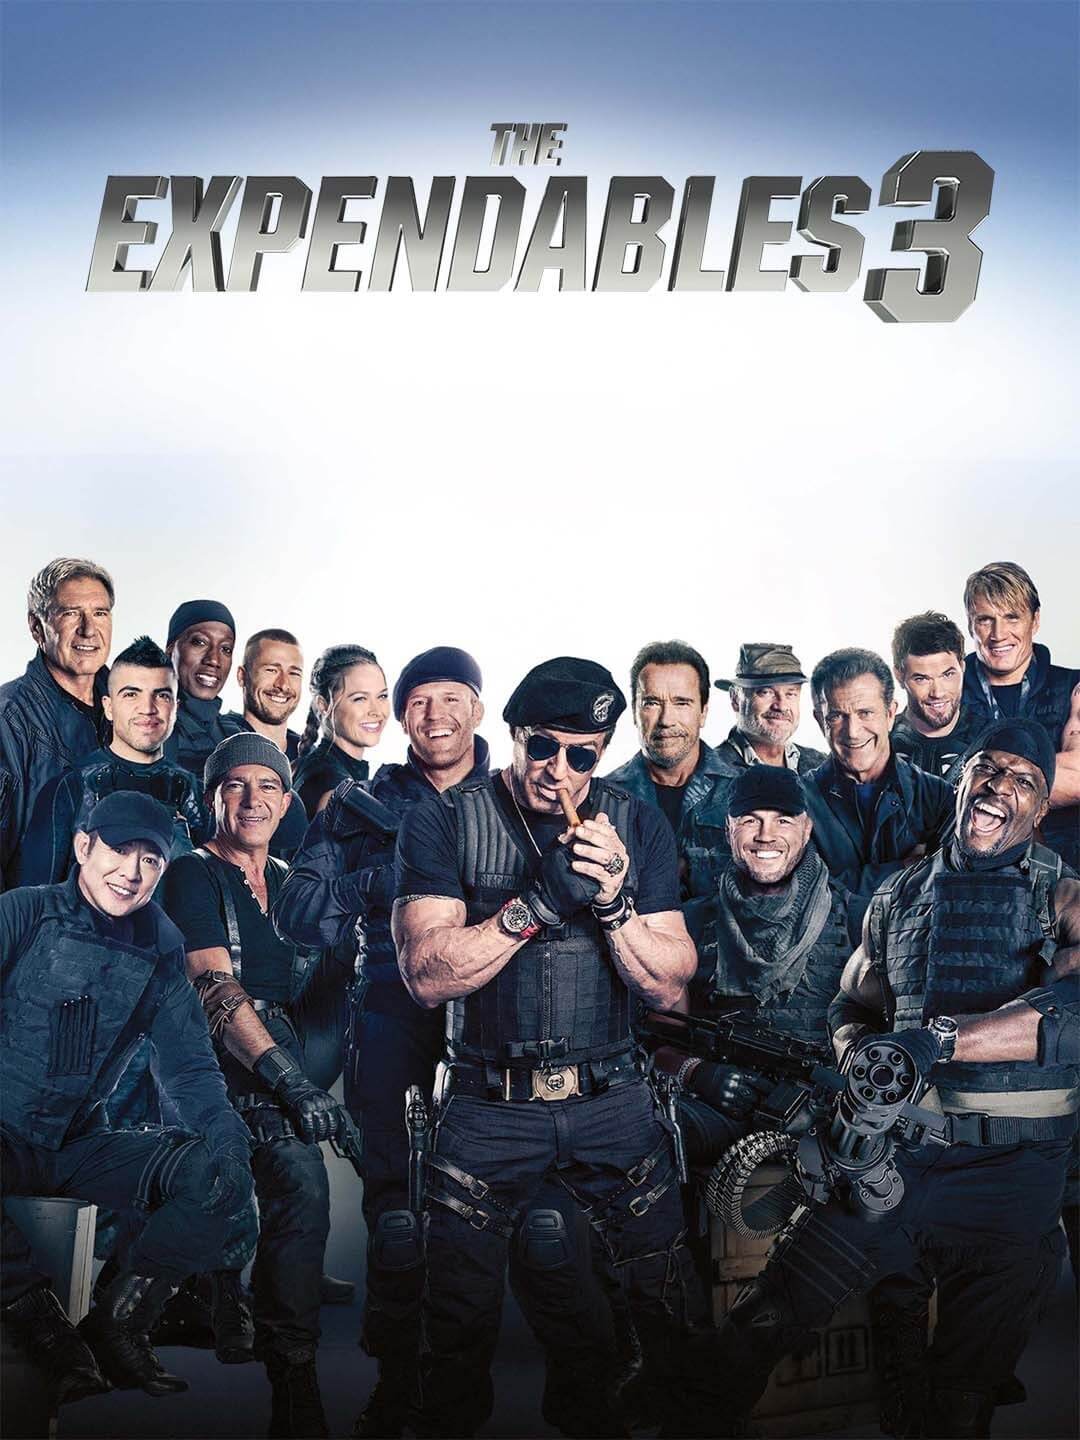 ดูหนังออนไลน์ฟรี The Expendables 3 (2014) ดิ เอ็กซ์เพ็นเดเบิลส์ โคตรคนทีมมหากาฬ 3